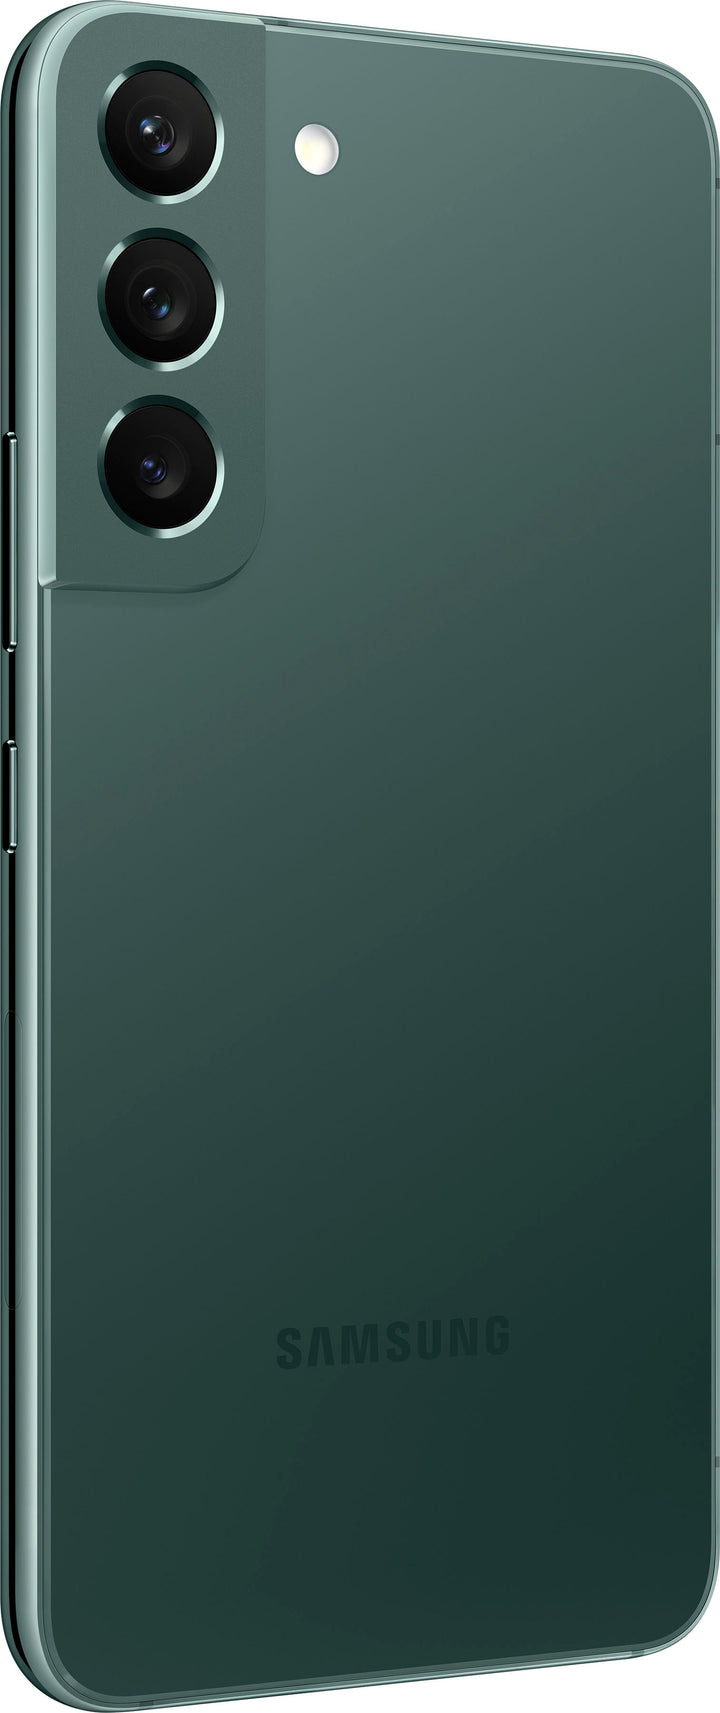 Samsung - Galaxy S22 128GB - Green (Verizon)_1